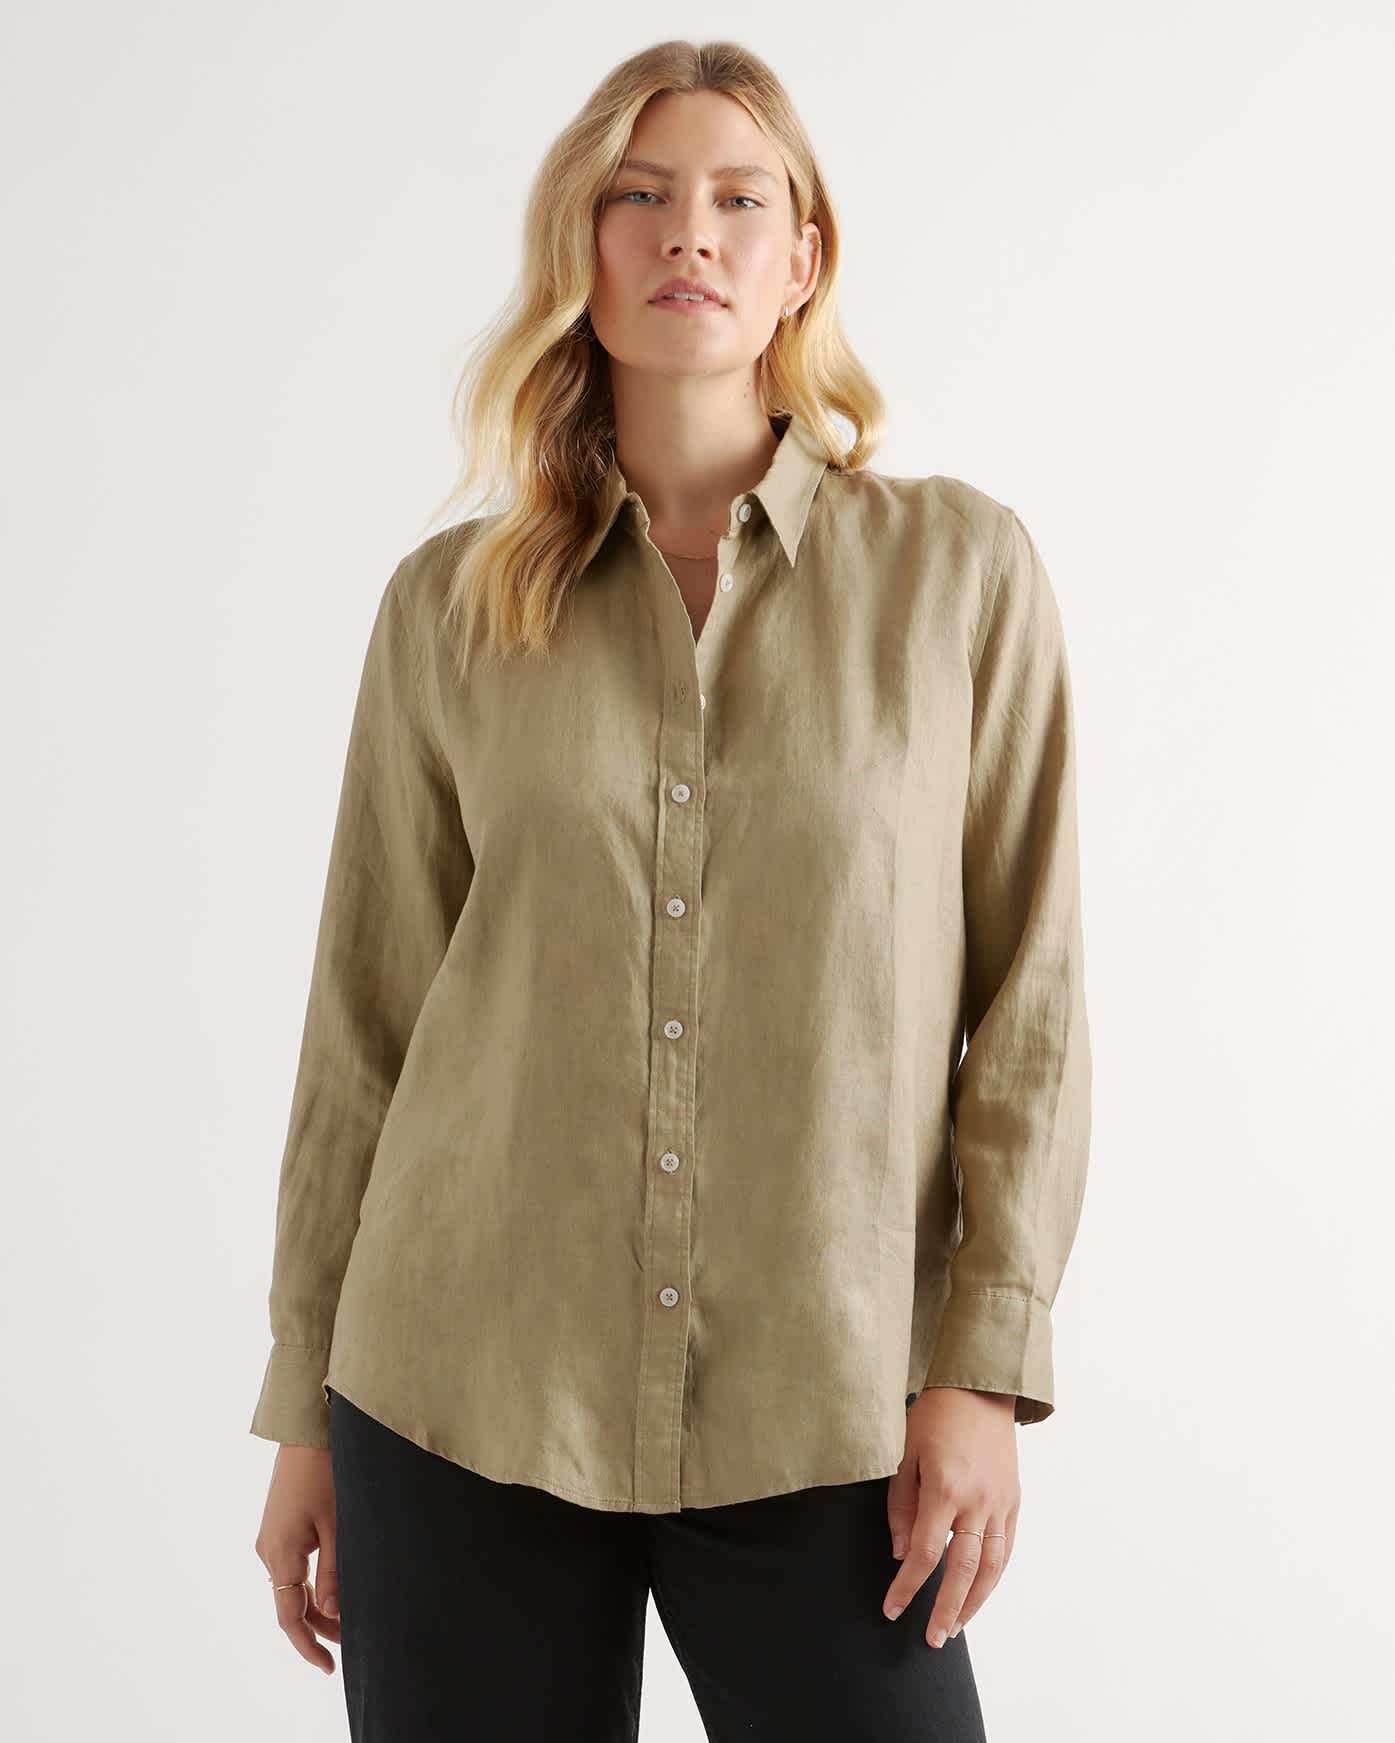 100% European Linen Long Sleeve Shirt - Terracotta